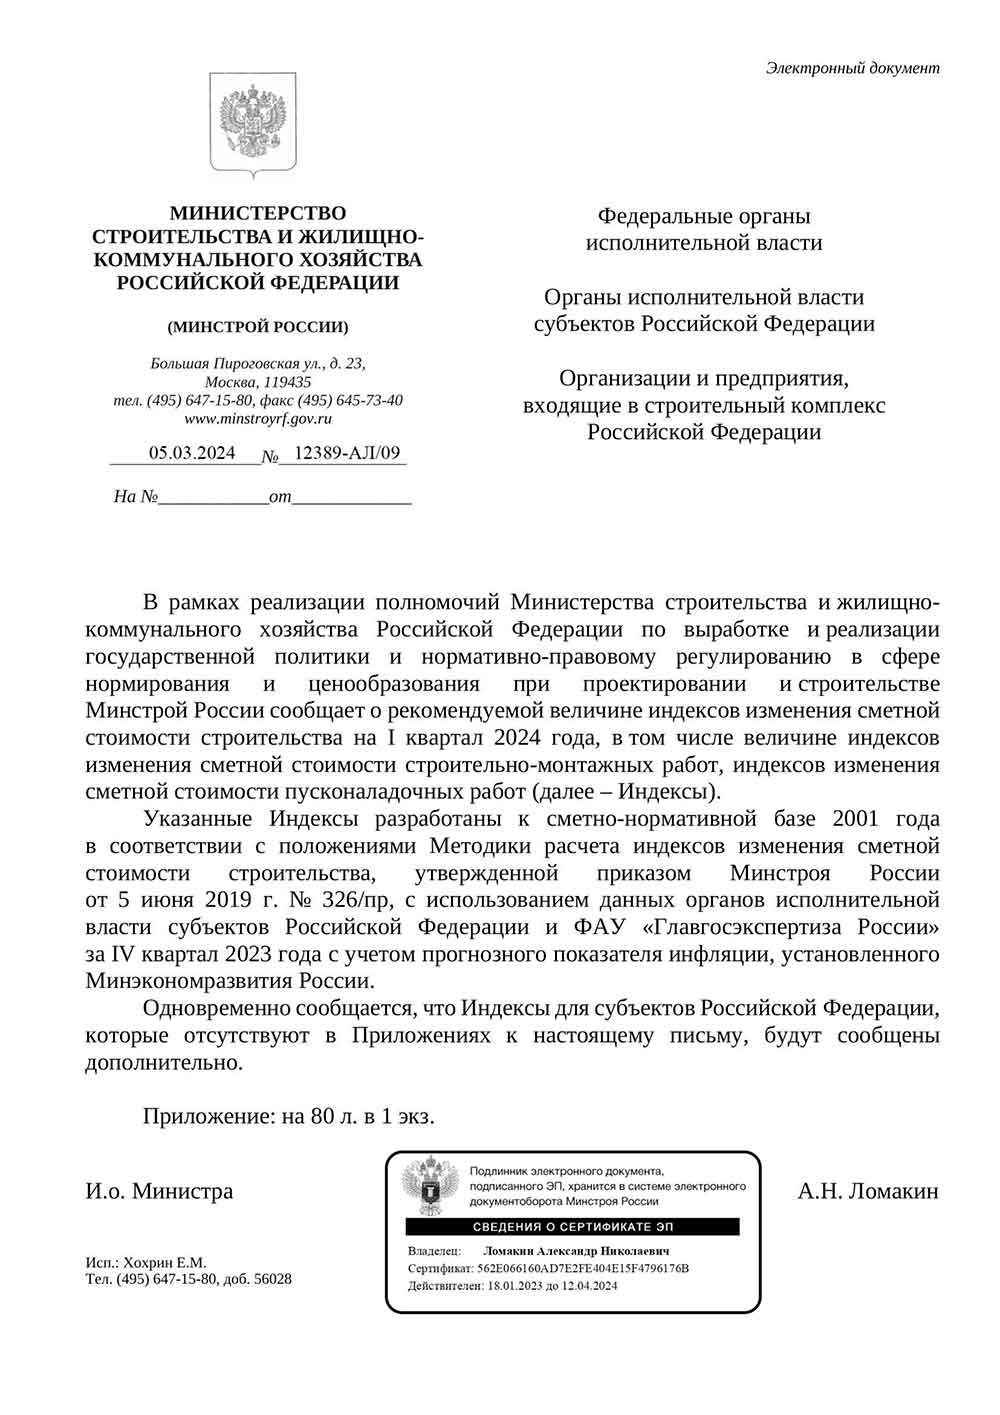 Письмо Минстроя РФ №12389-АЛ/09 от 05.03.2024 г. Скачать ПДФ